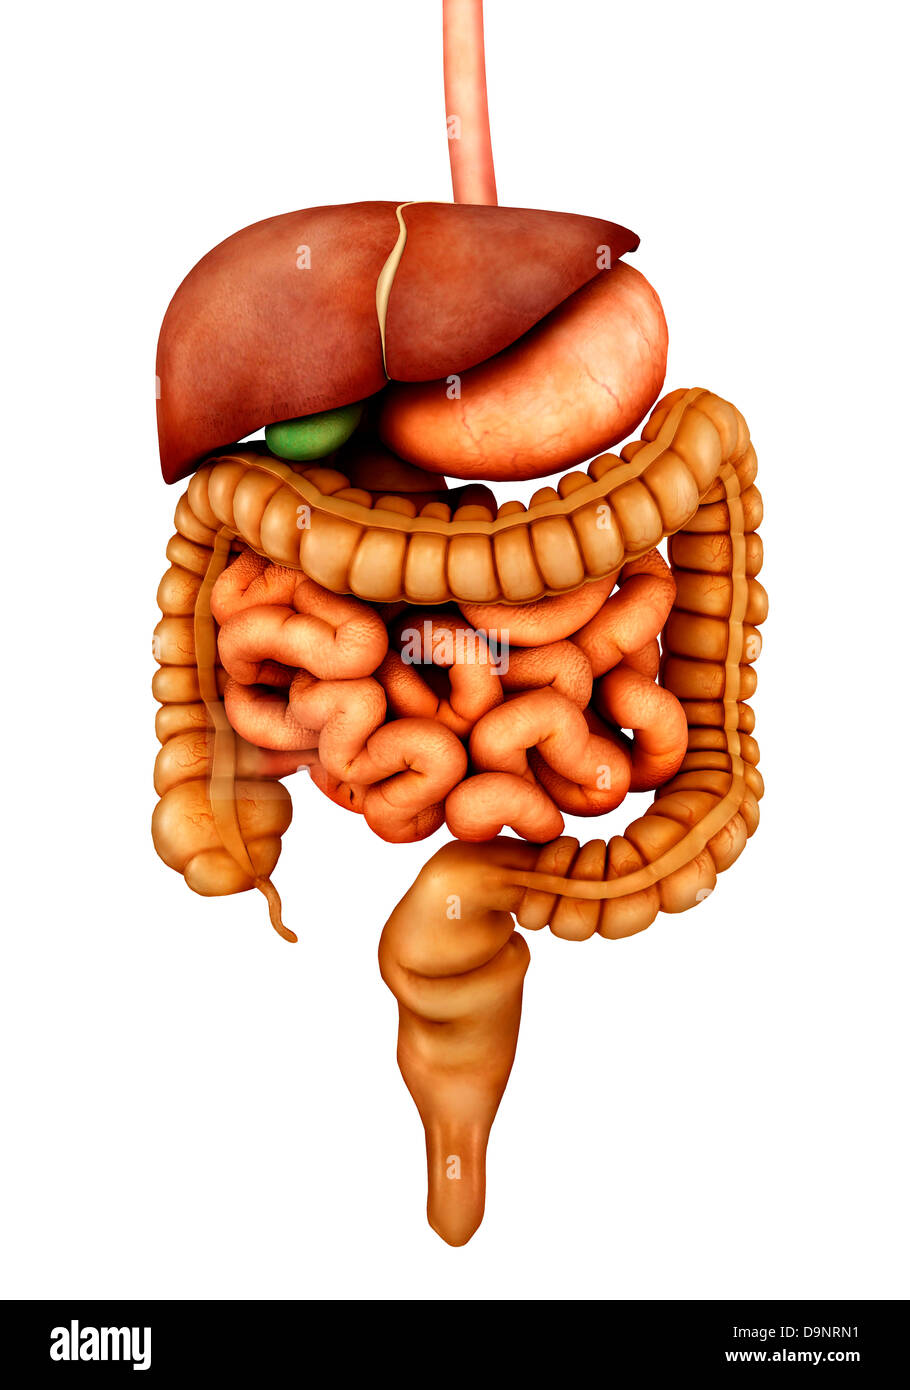 Anatomia dell apparato digestivo umano, vista frontale. Foto Stock